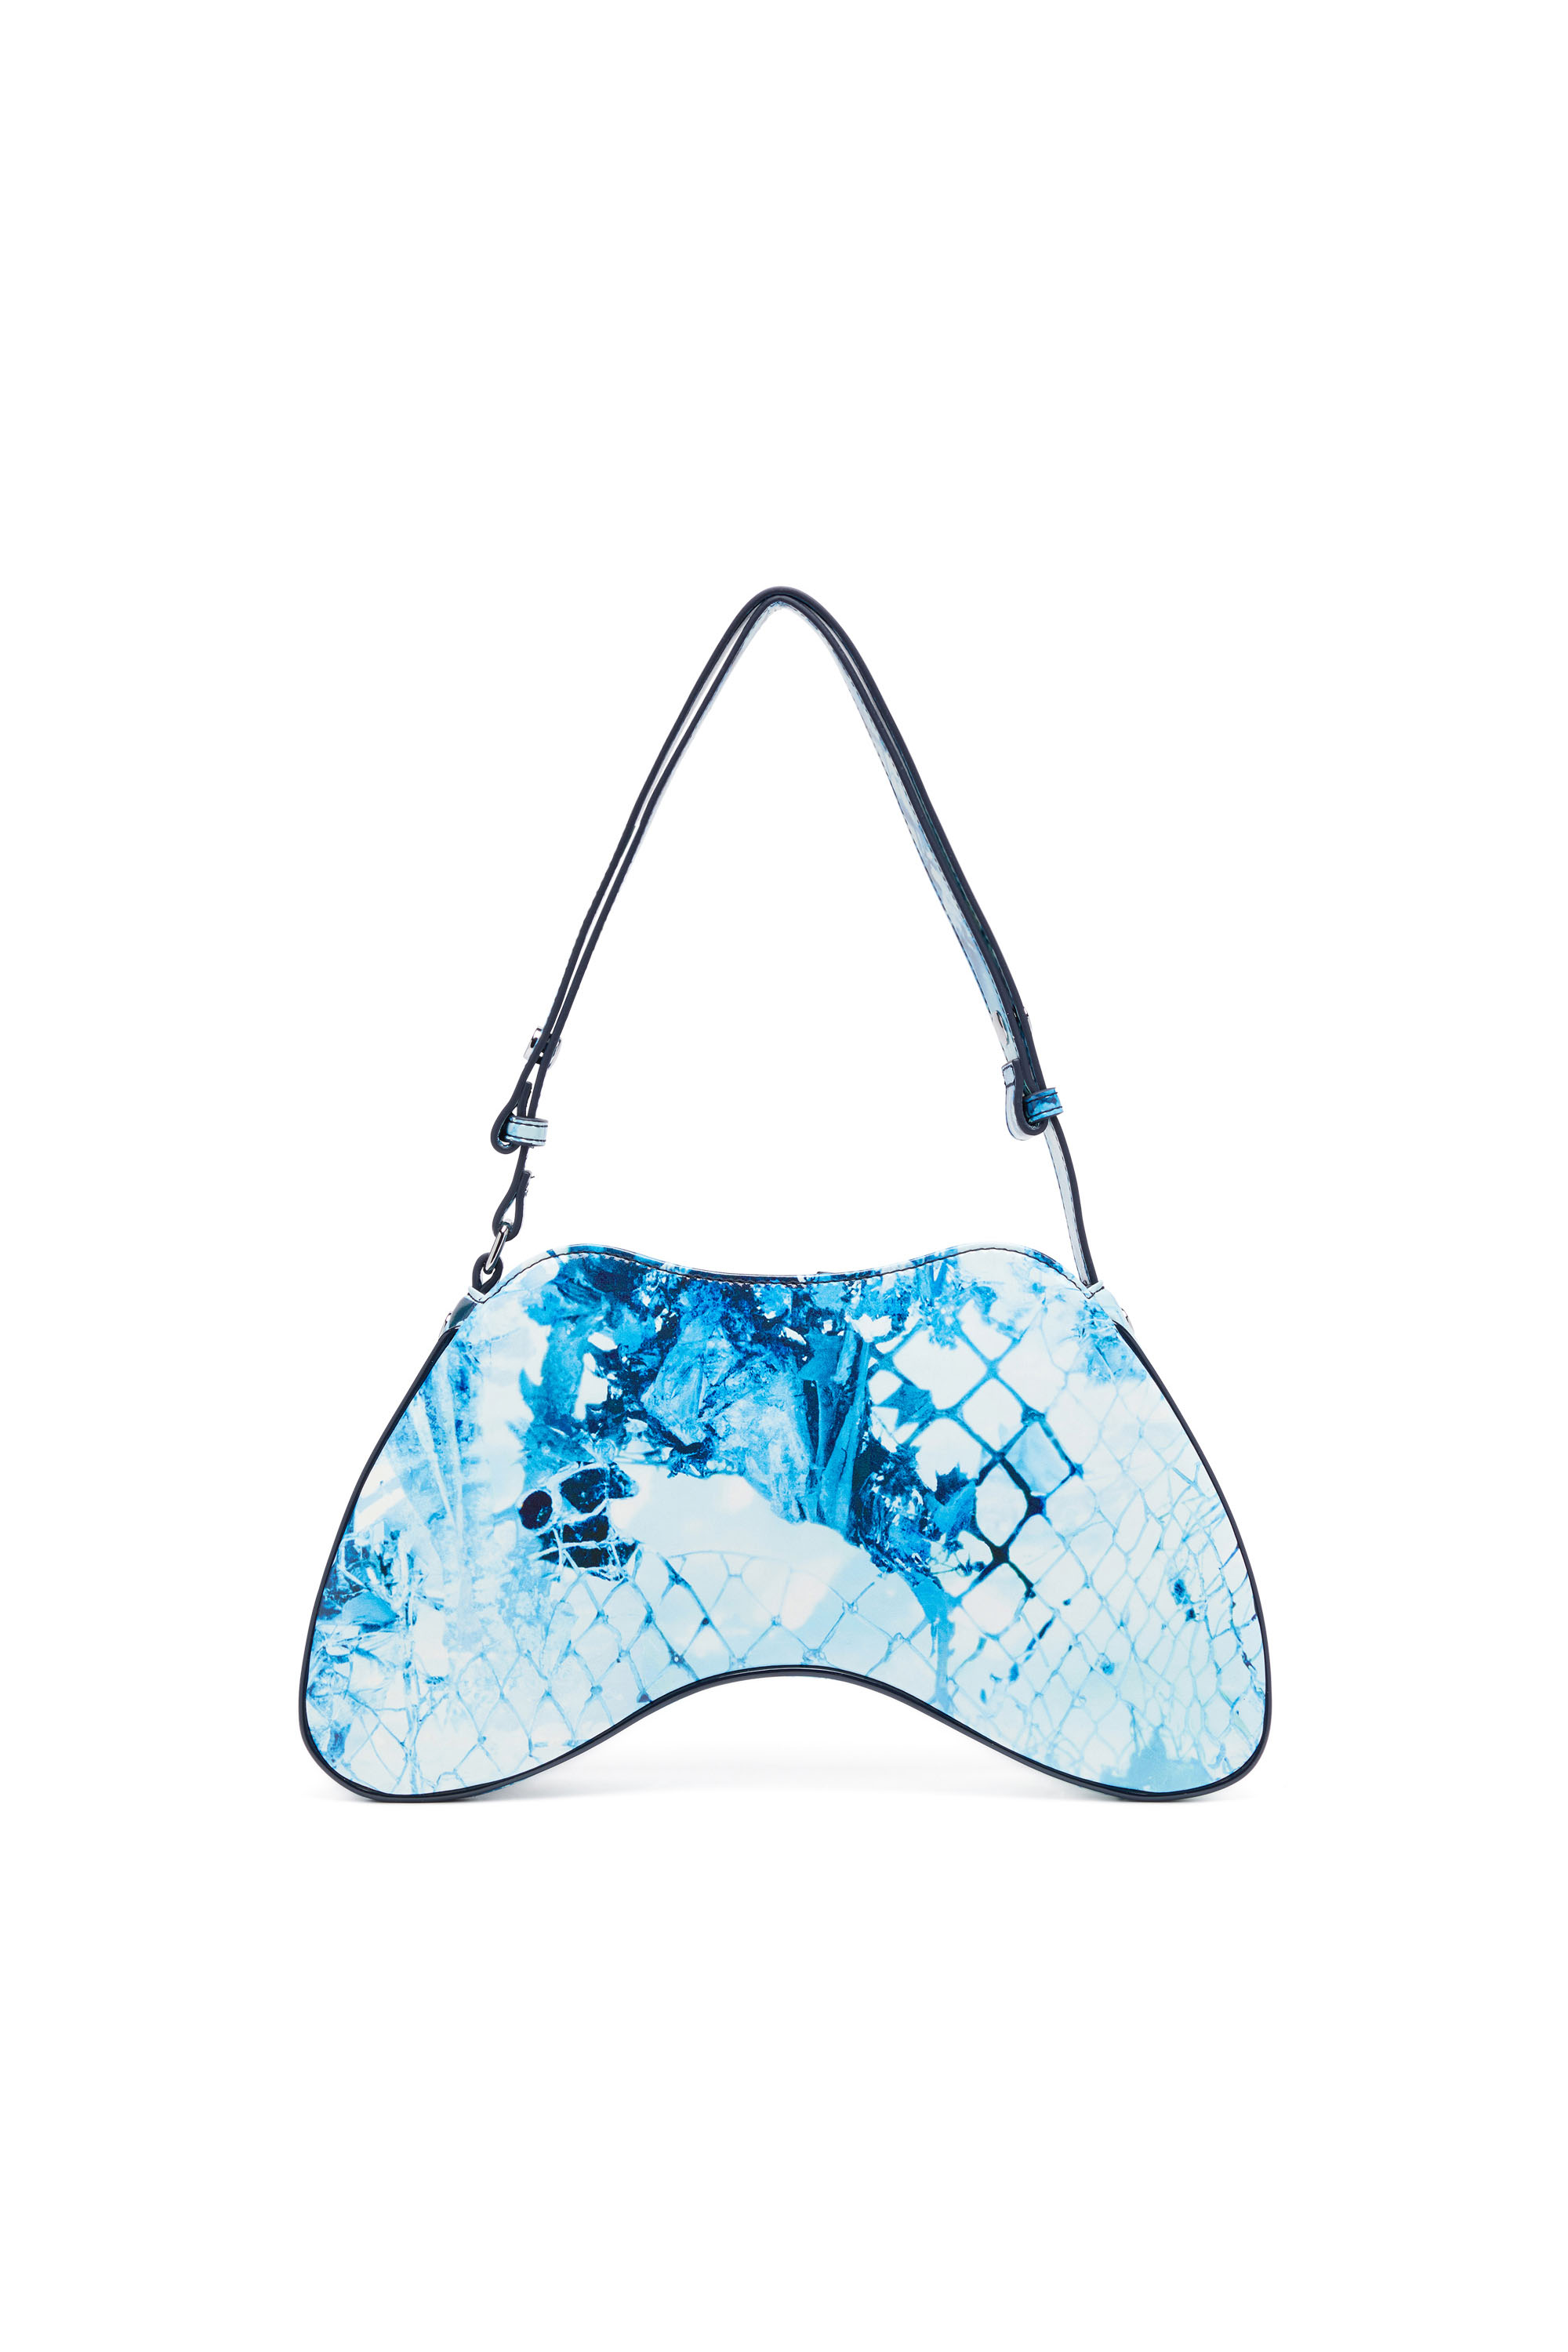 Diesel - PLAY SHOULDER, Woman Play-Shoulder bag in printed glossy PU in Blue - Image 2